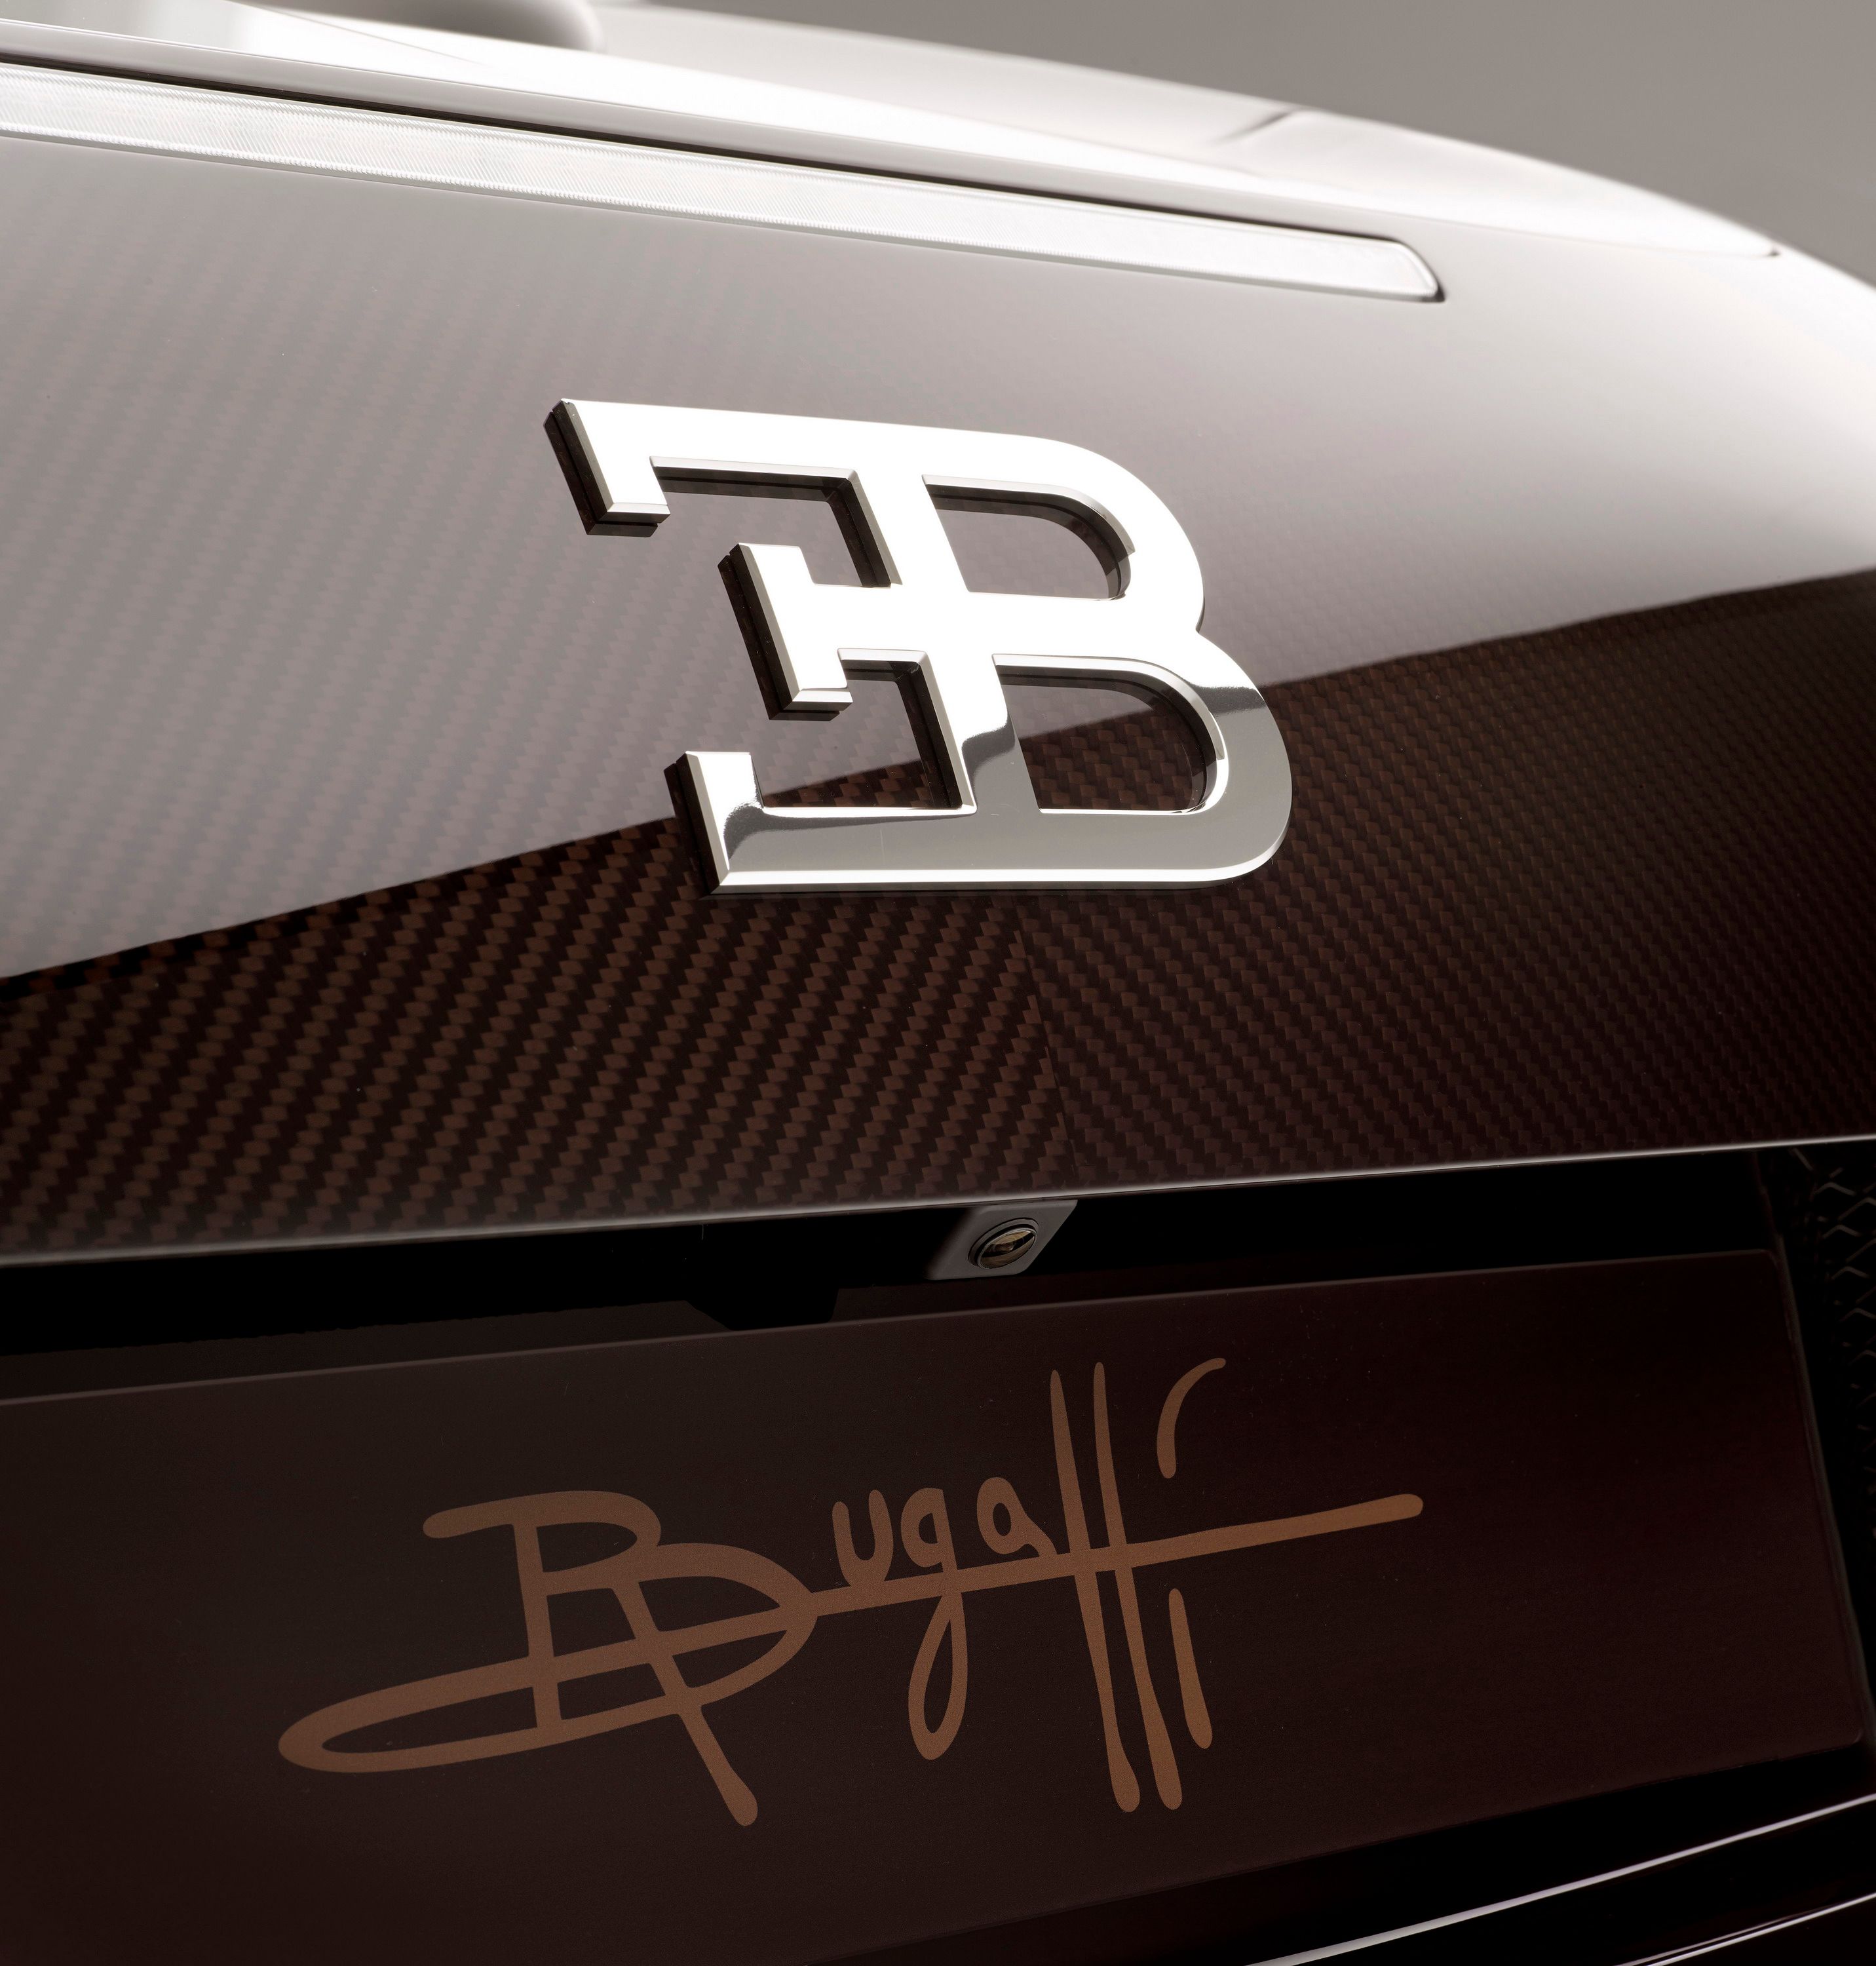 2014 Bugatti Veyron 16.4 Grand Sport Vitesse Rembrandt Bugatti